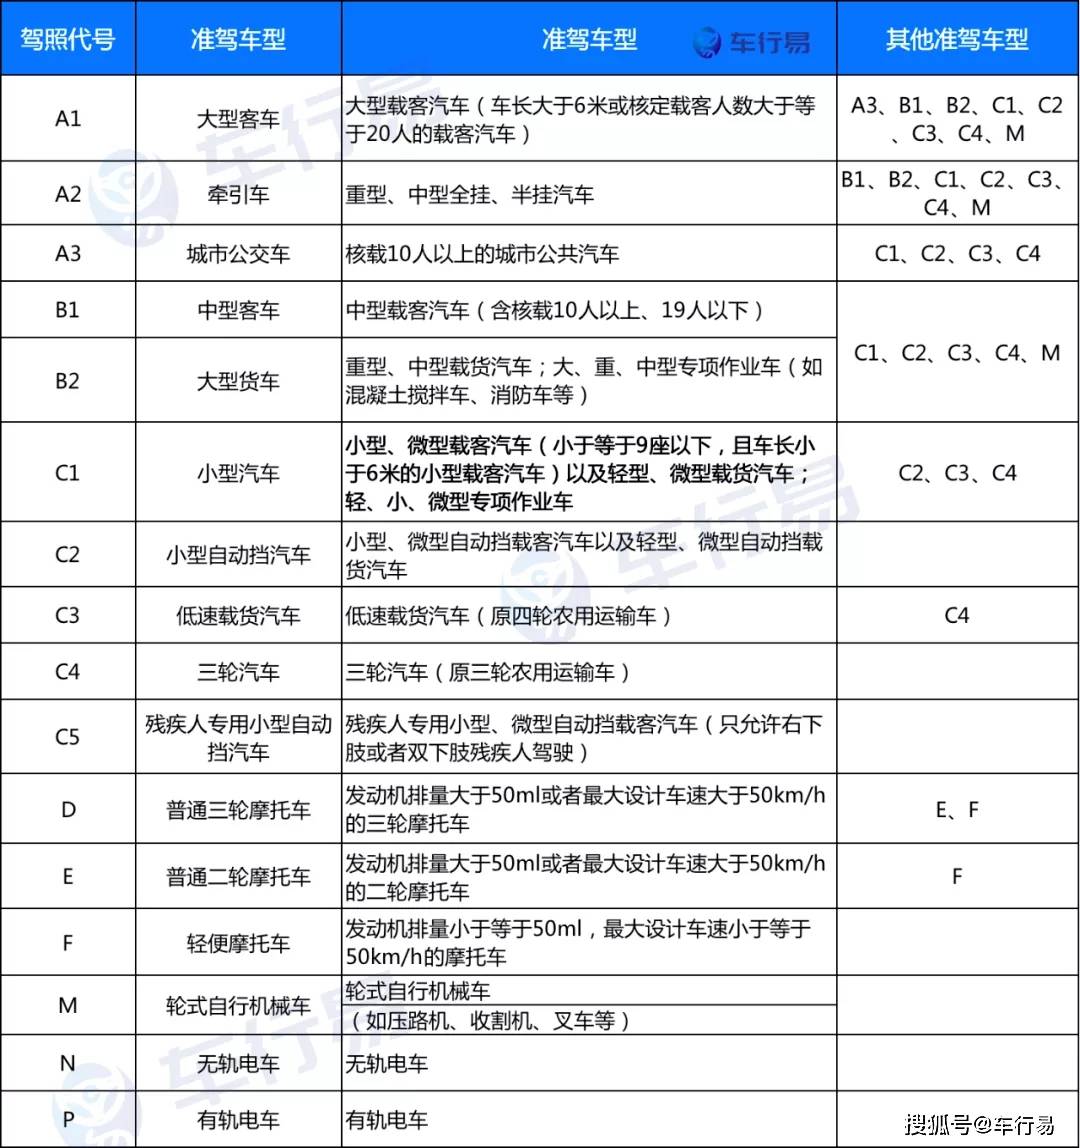 不要在重庆开车,这11种行为,驾驶证一次性扣完12分